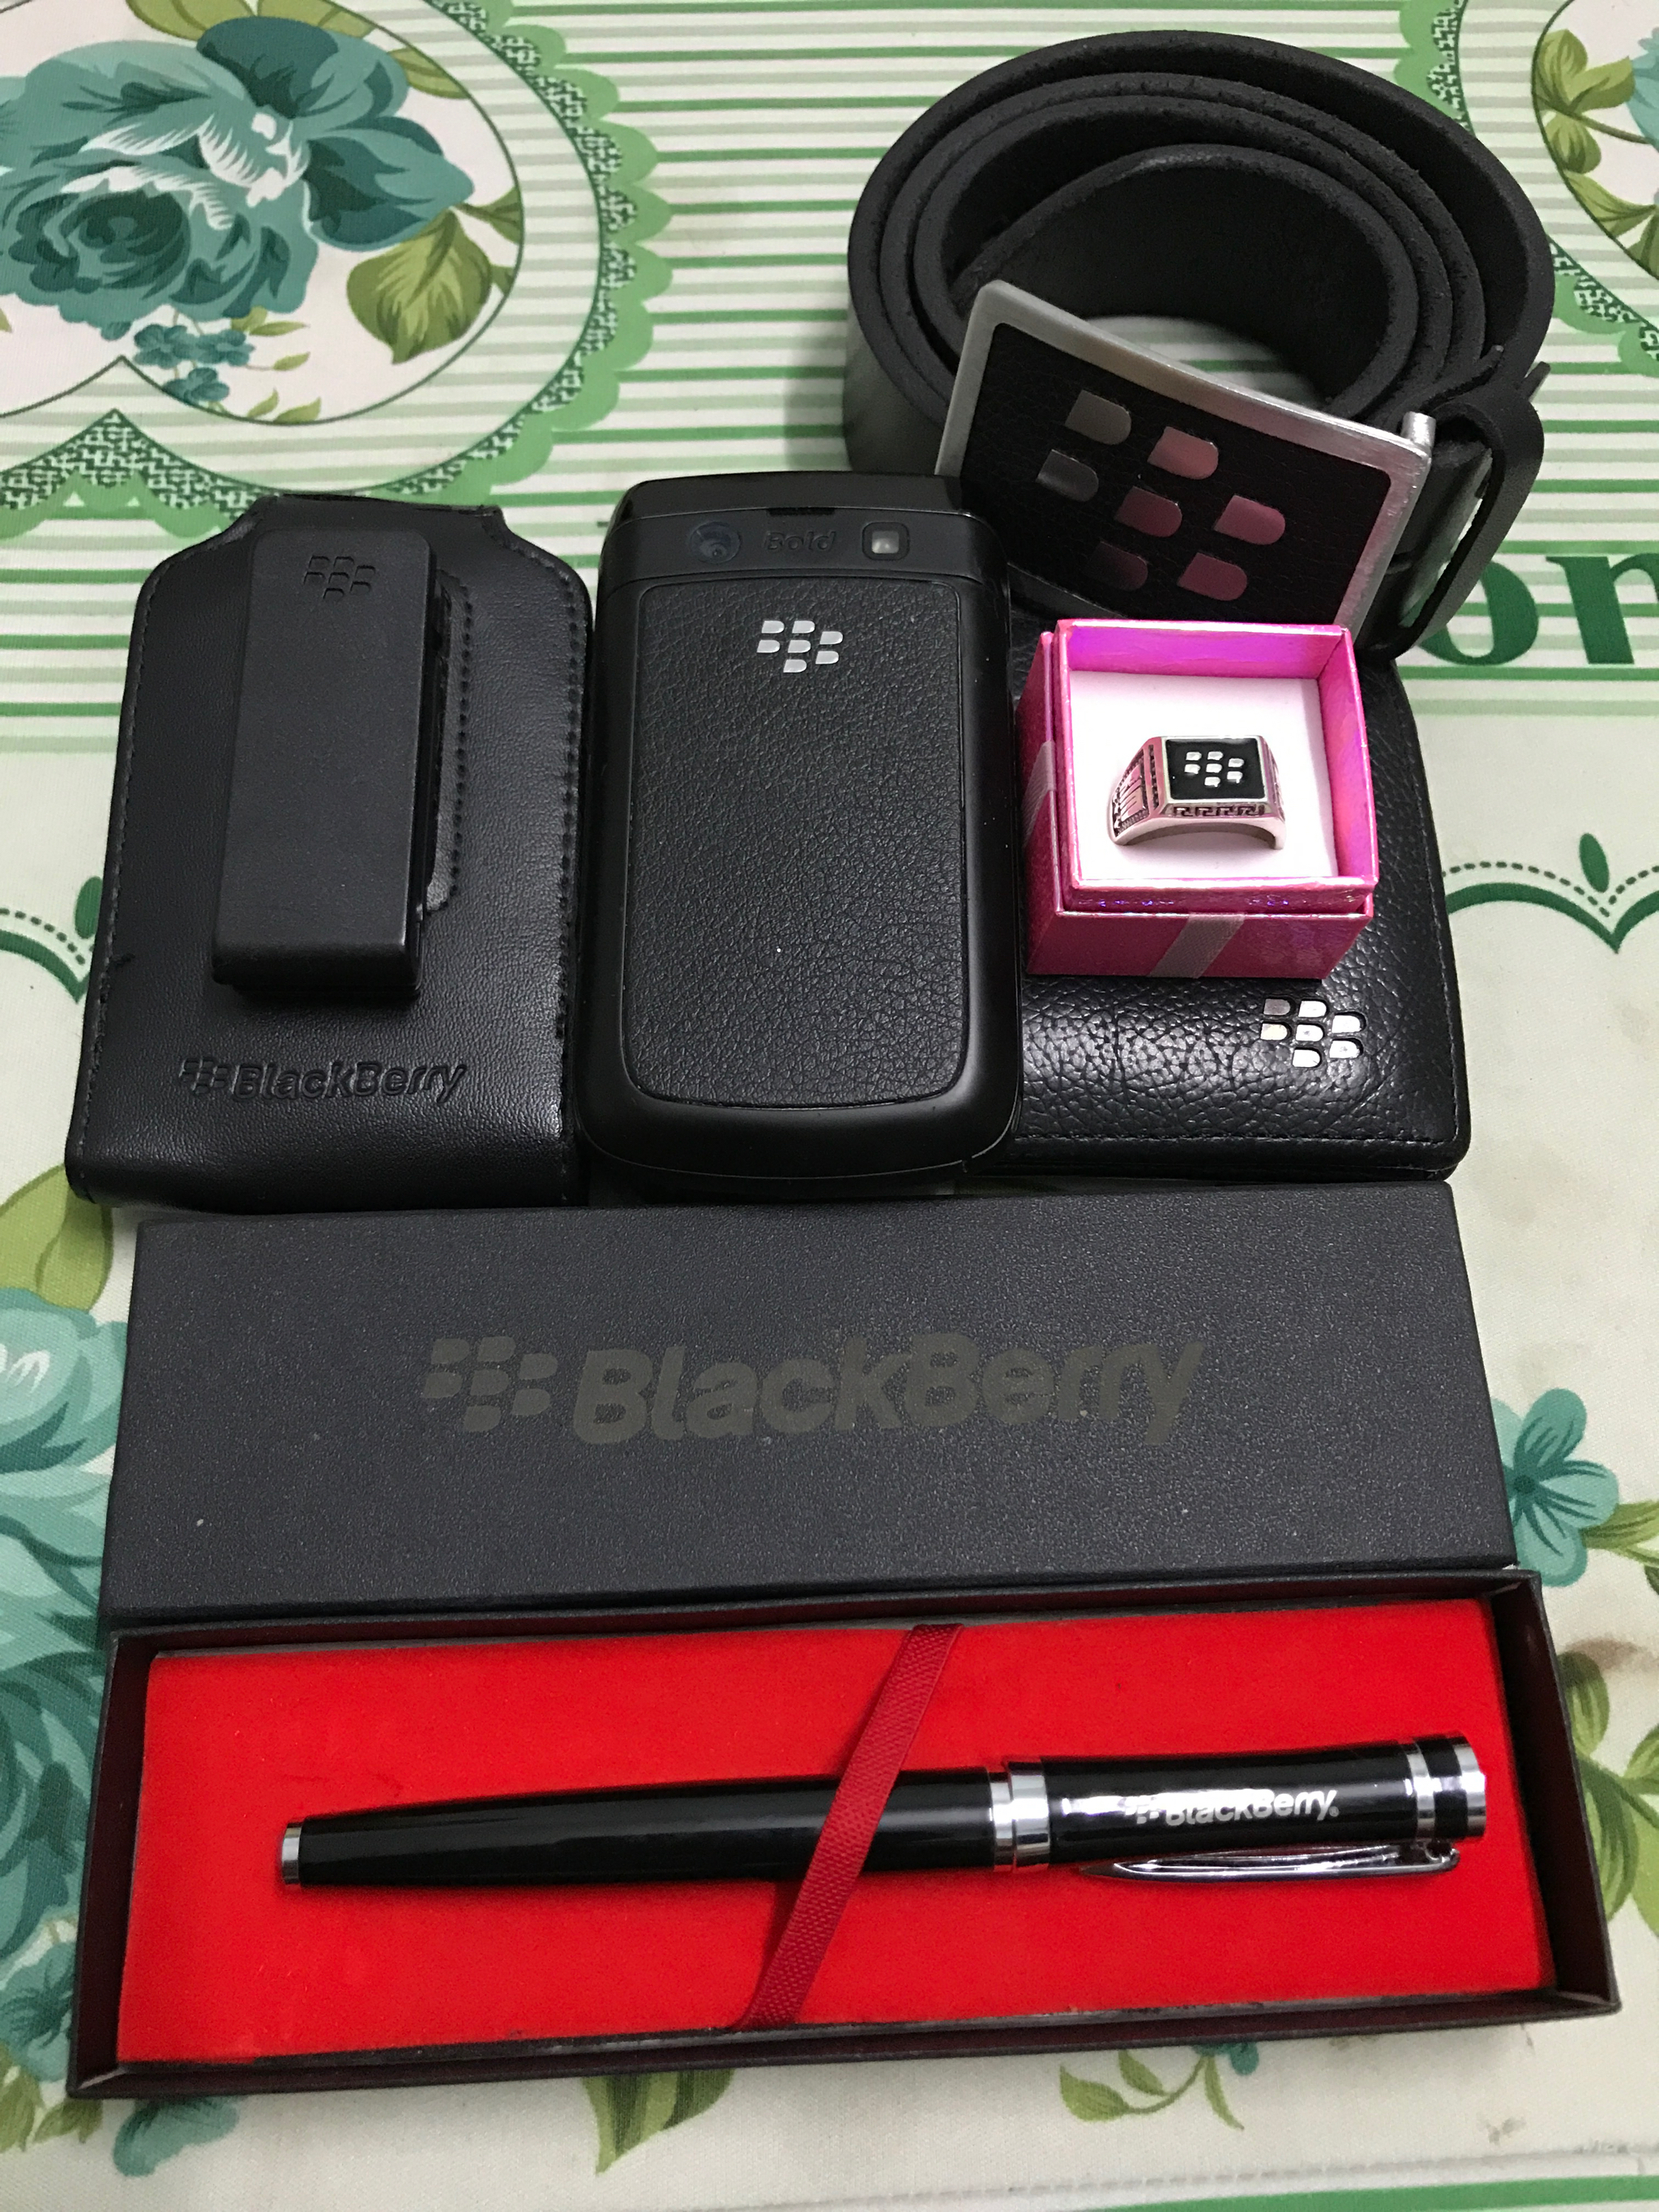 Những món có logo Blackberry mà mình còn sữ dụng ( hình chụp từ 2014)